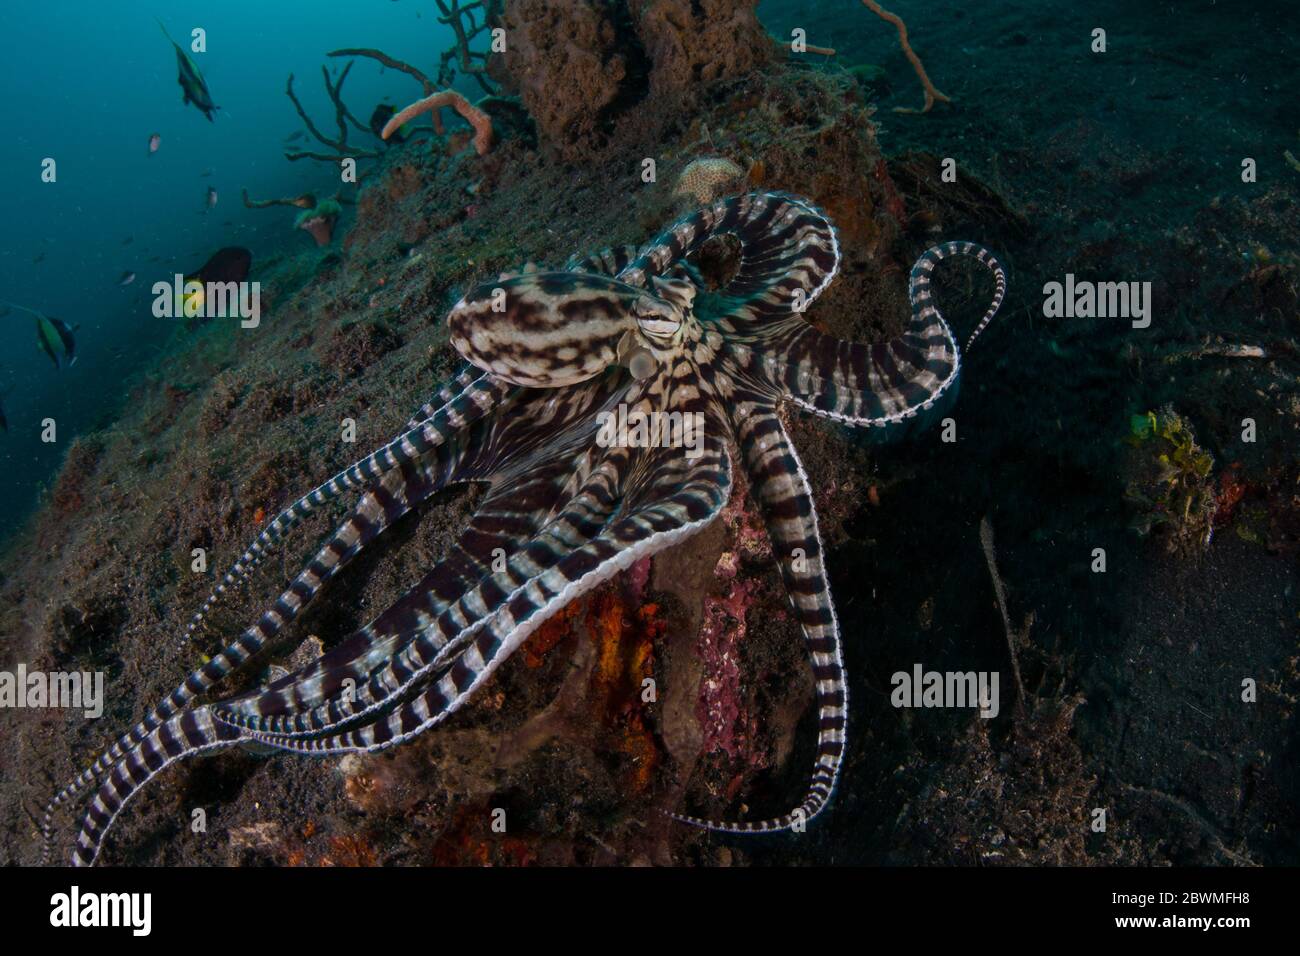 Ein imitierter Oktopus, Thaumoctopus mimimimicus, kriecht über den schwarzen Sandboden der Lembeh-Straße, Indonesien. Diese seltene Kopffüßelform kann andere Arten nachahmen. Stockfoto